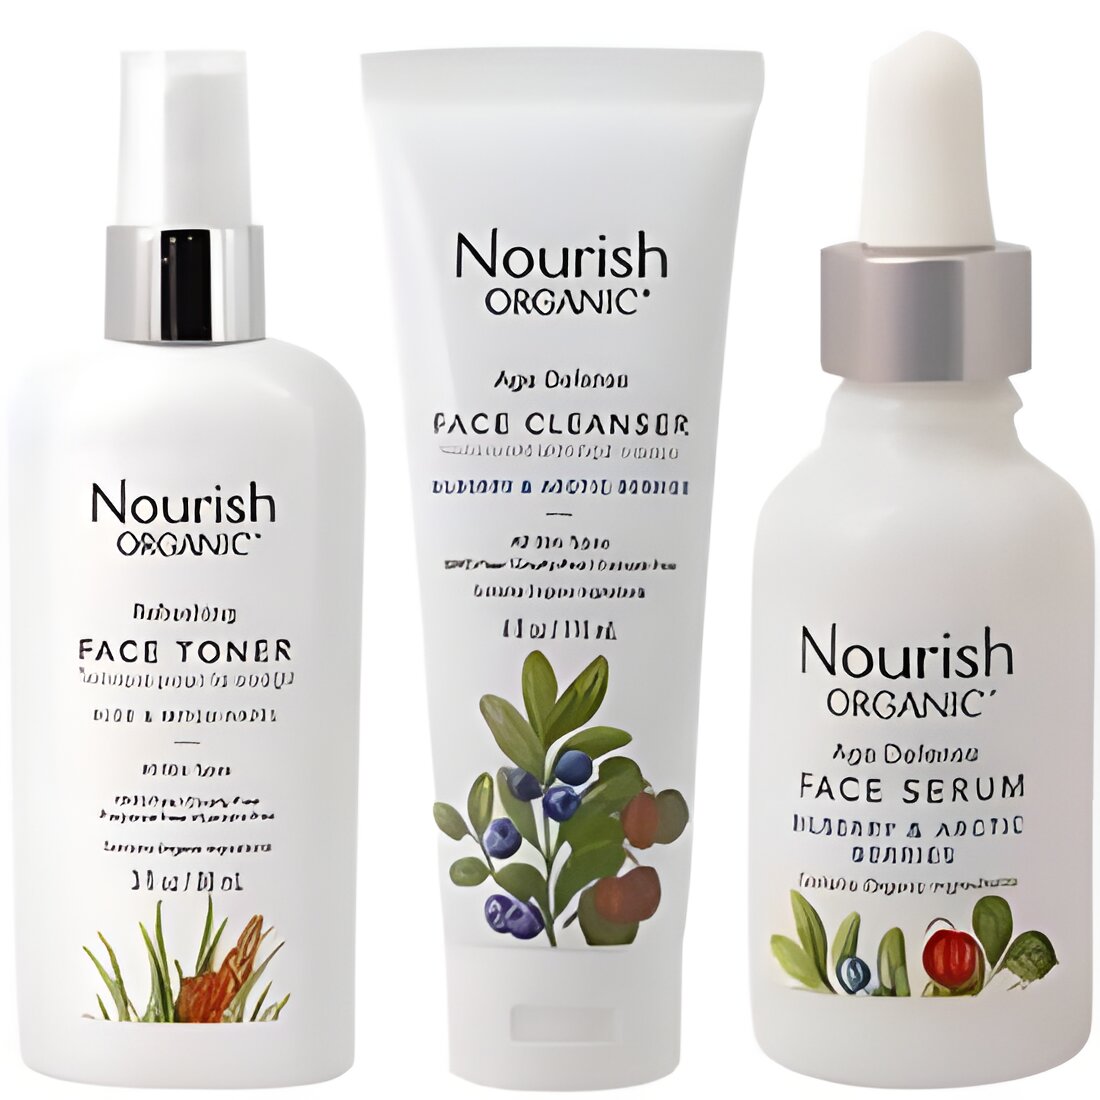 Free Nourish Organic Beauty Products